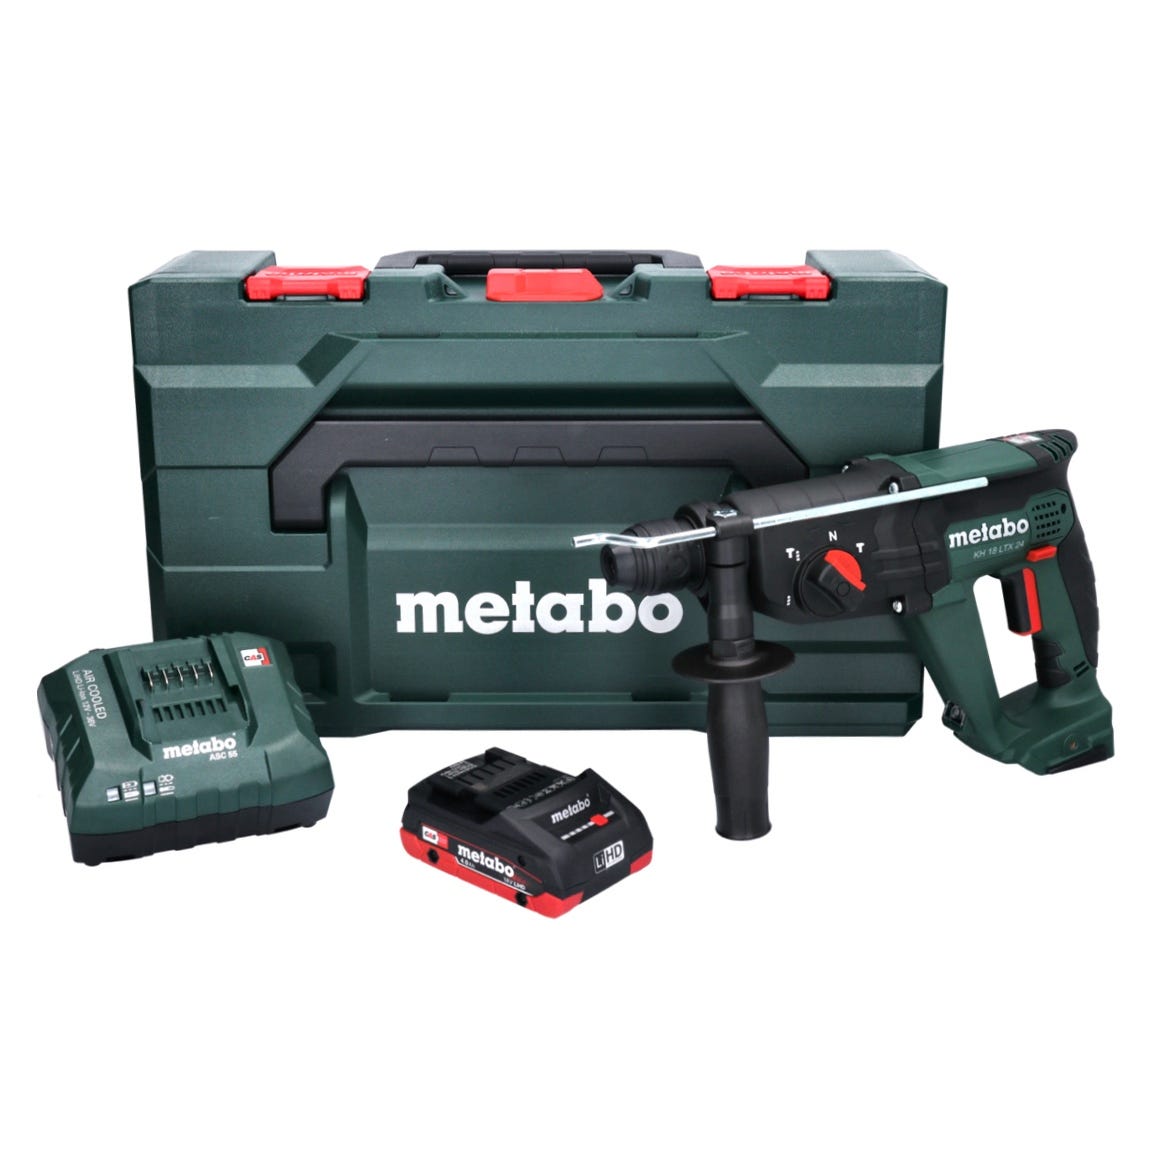 Metabo KH 18 LTX 24 Marteau sans fil 2,1J SDS plus 18V + 1x Batterie 4,0Ah + Chargeur + Coffret MetaBOX 0